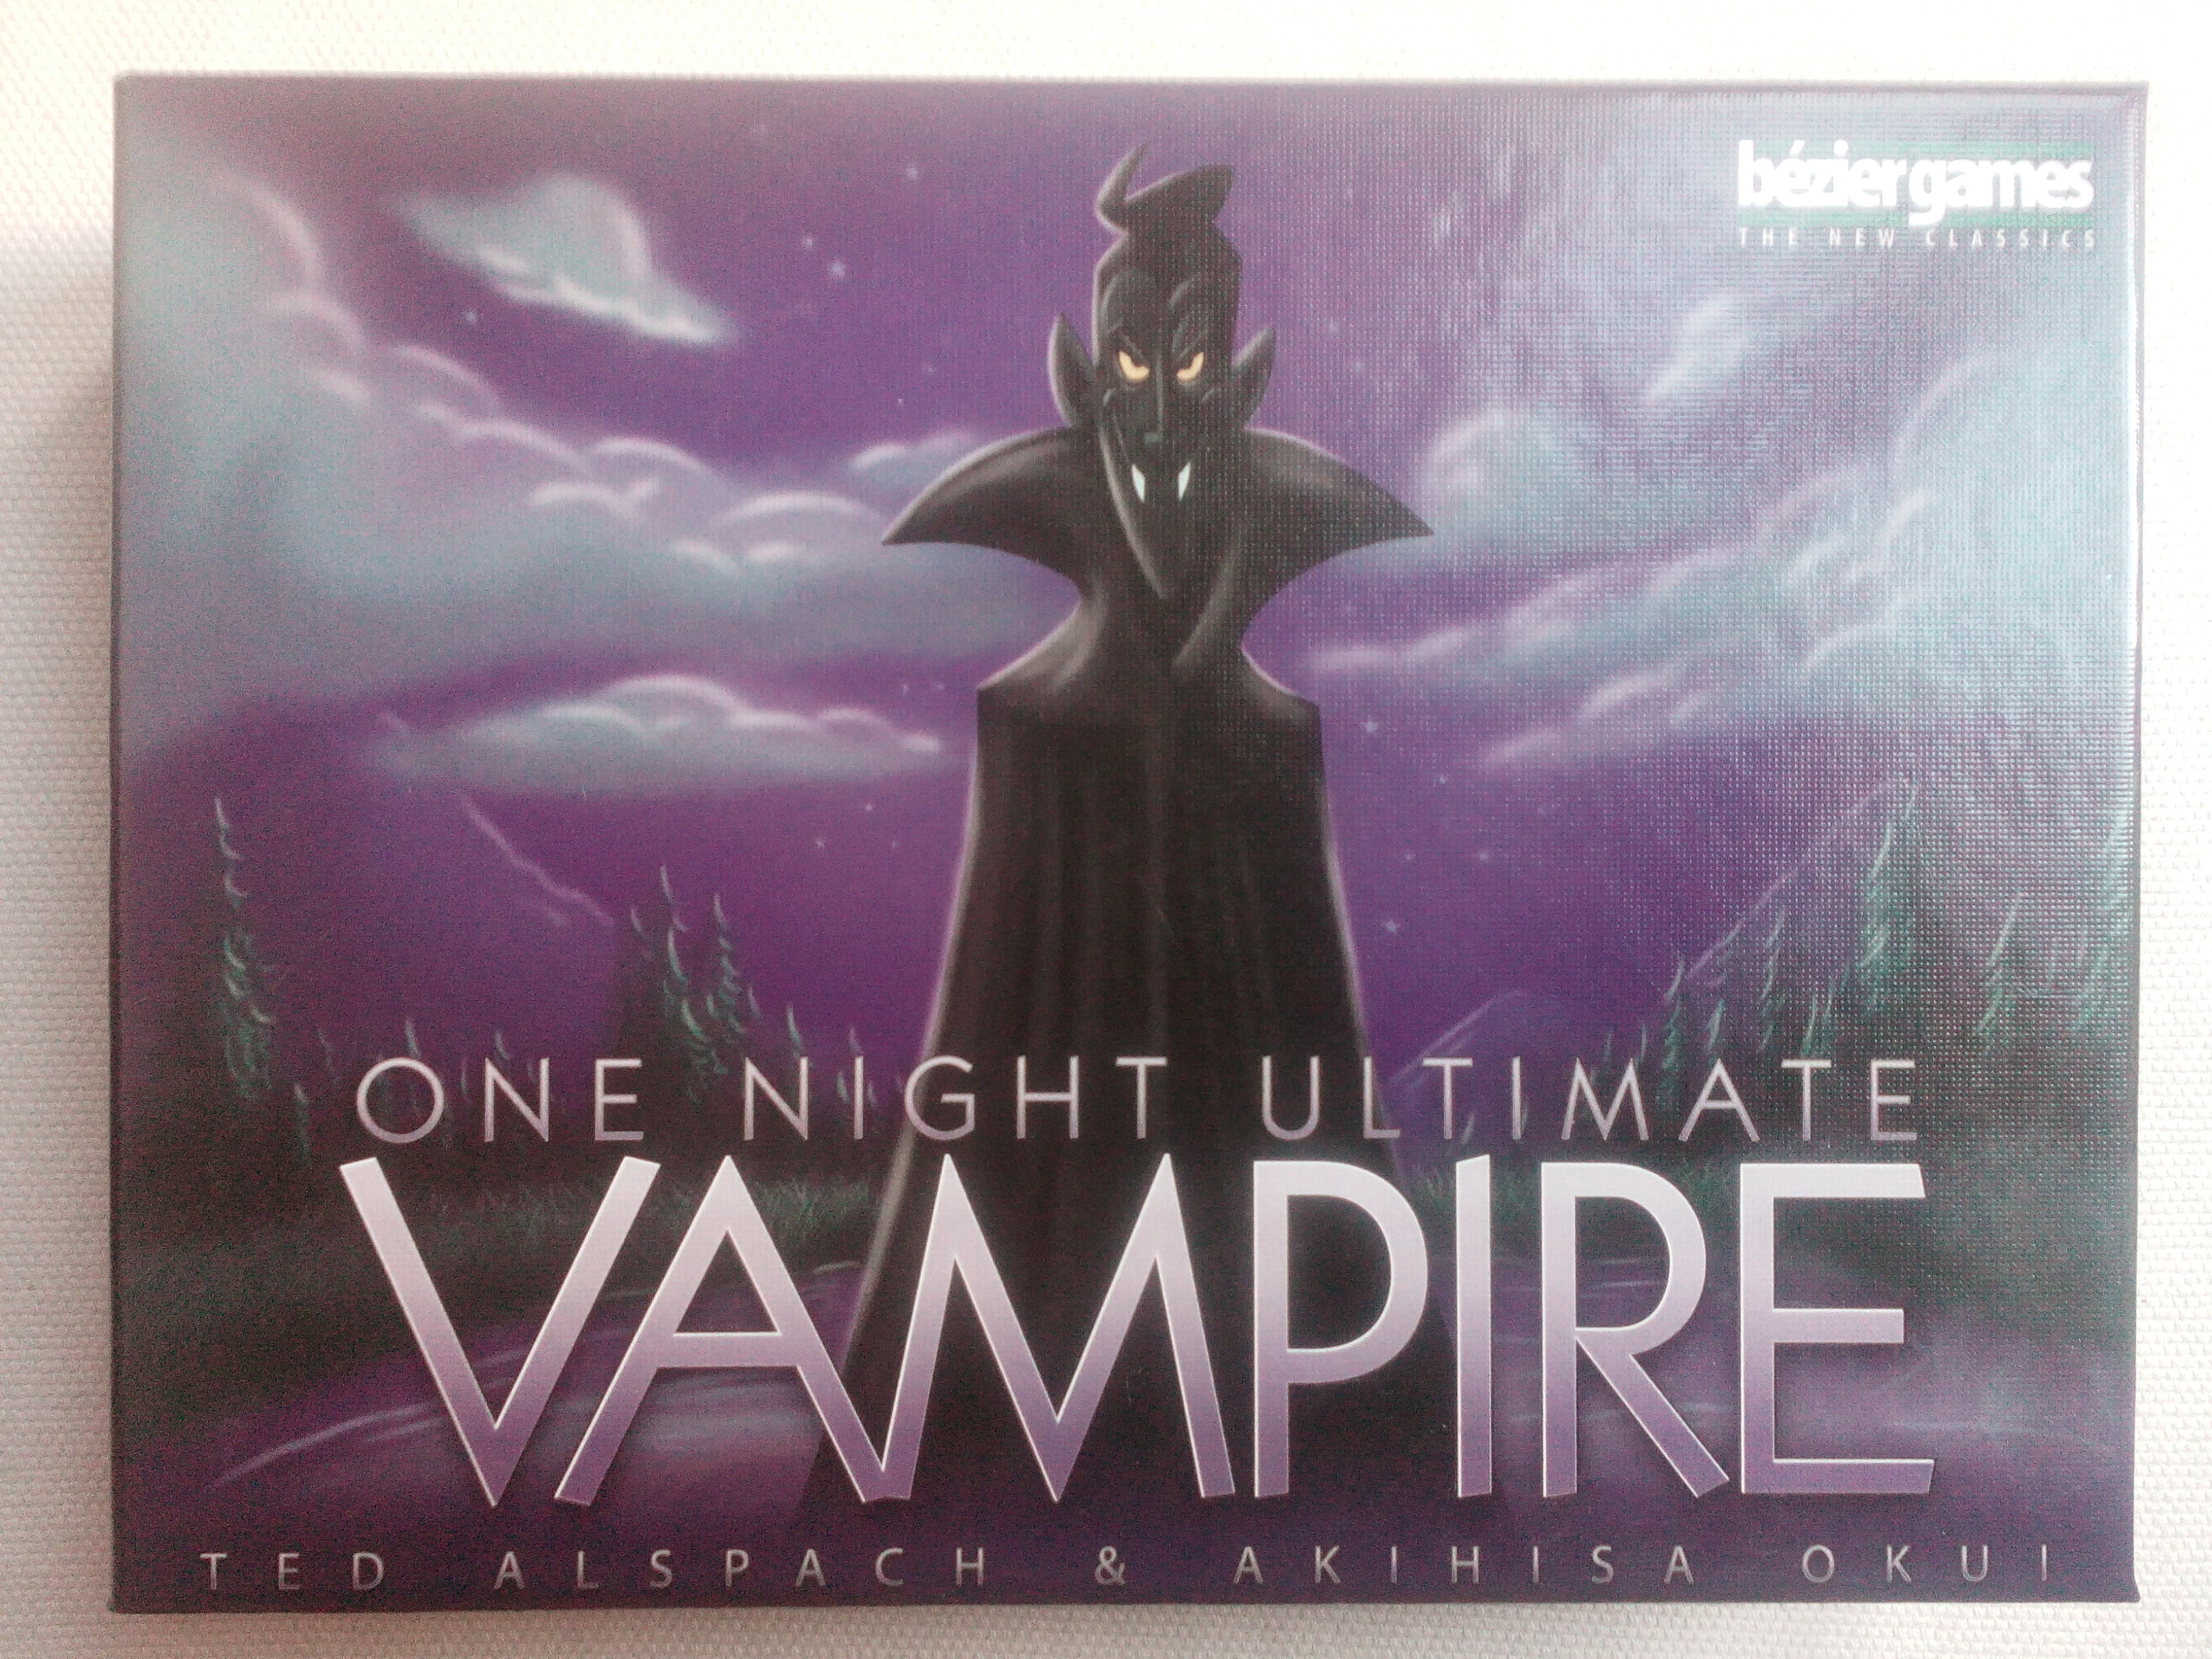 One night ultimate vampire